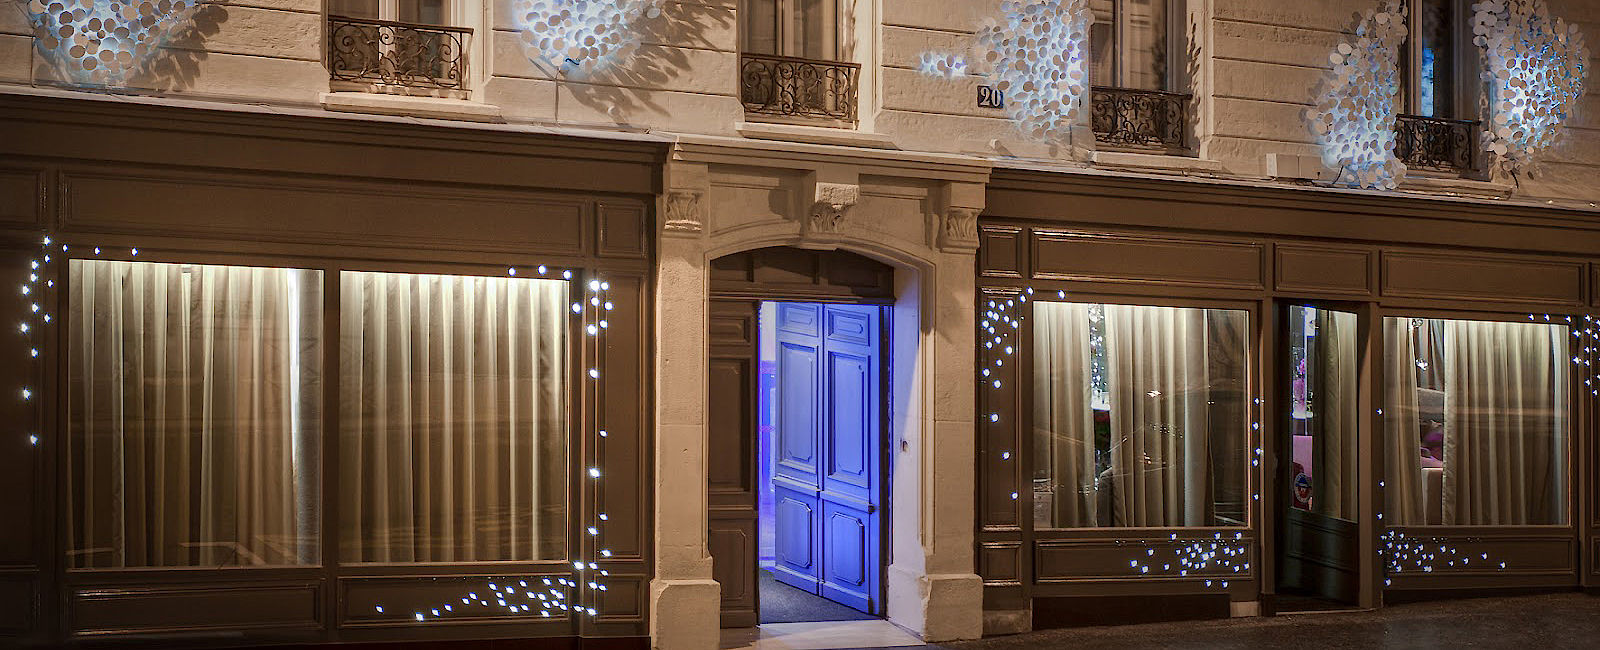 HOTEL TIPPS
 Seven Hotel Paris 
 Designkunstwerk 